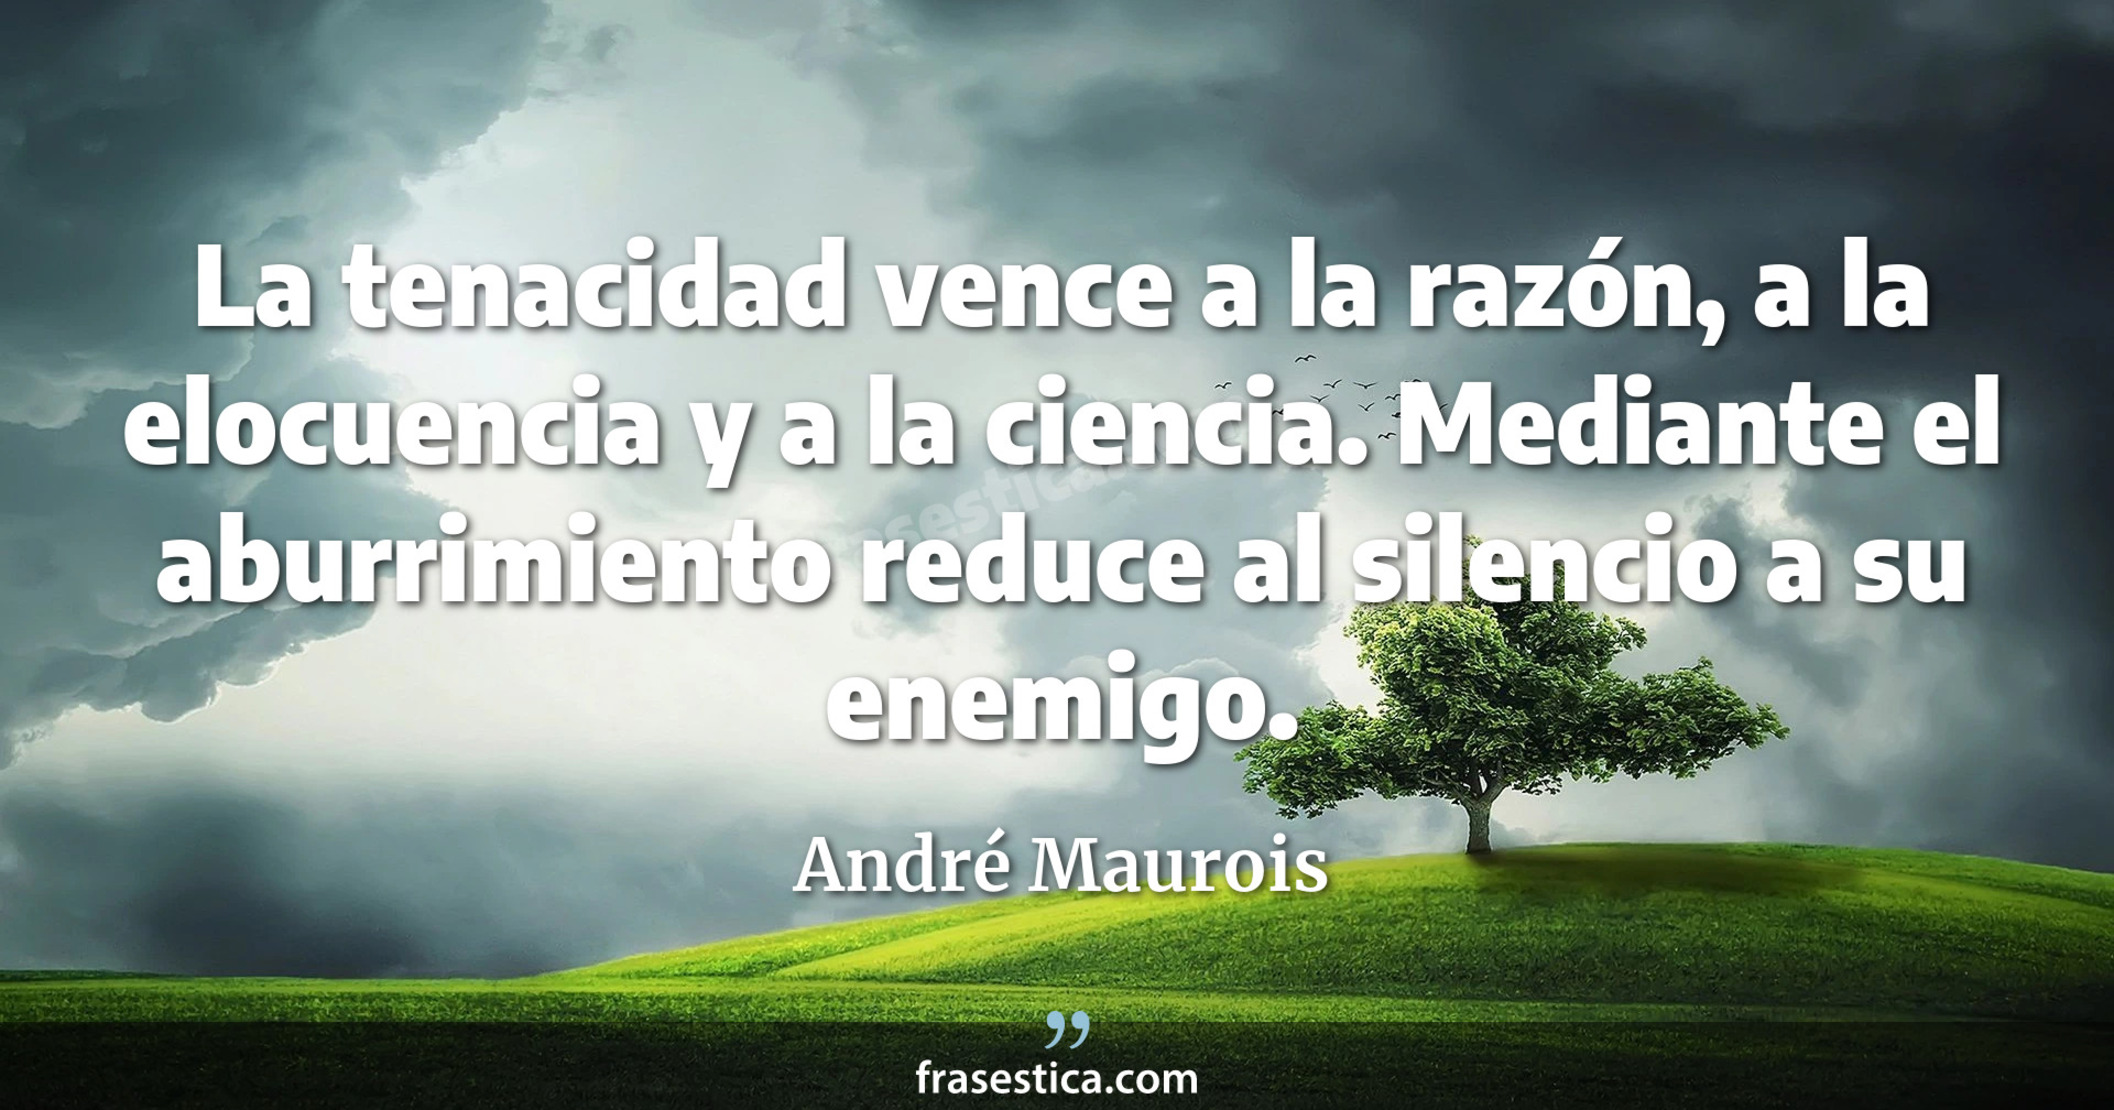 La tenacidad vence a la razón, a la elocuencia y a la ciencia. Mediante el aburrimiento reduce al silencio a su enemigo. - André Maurois